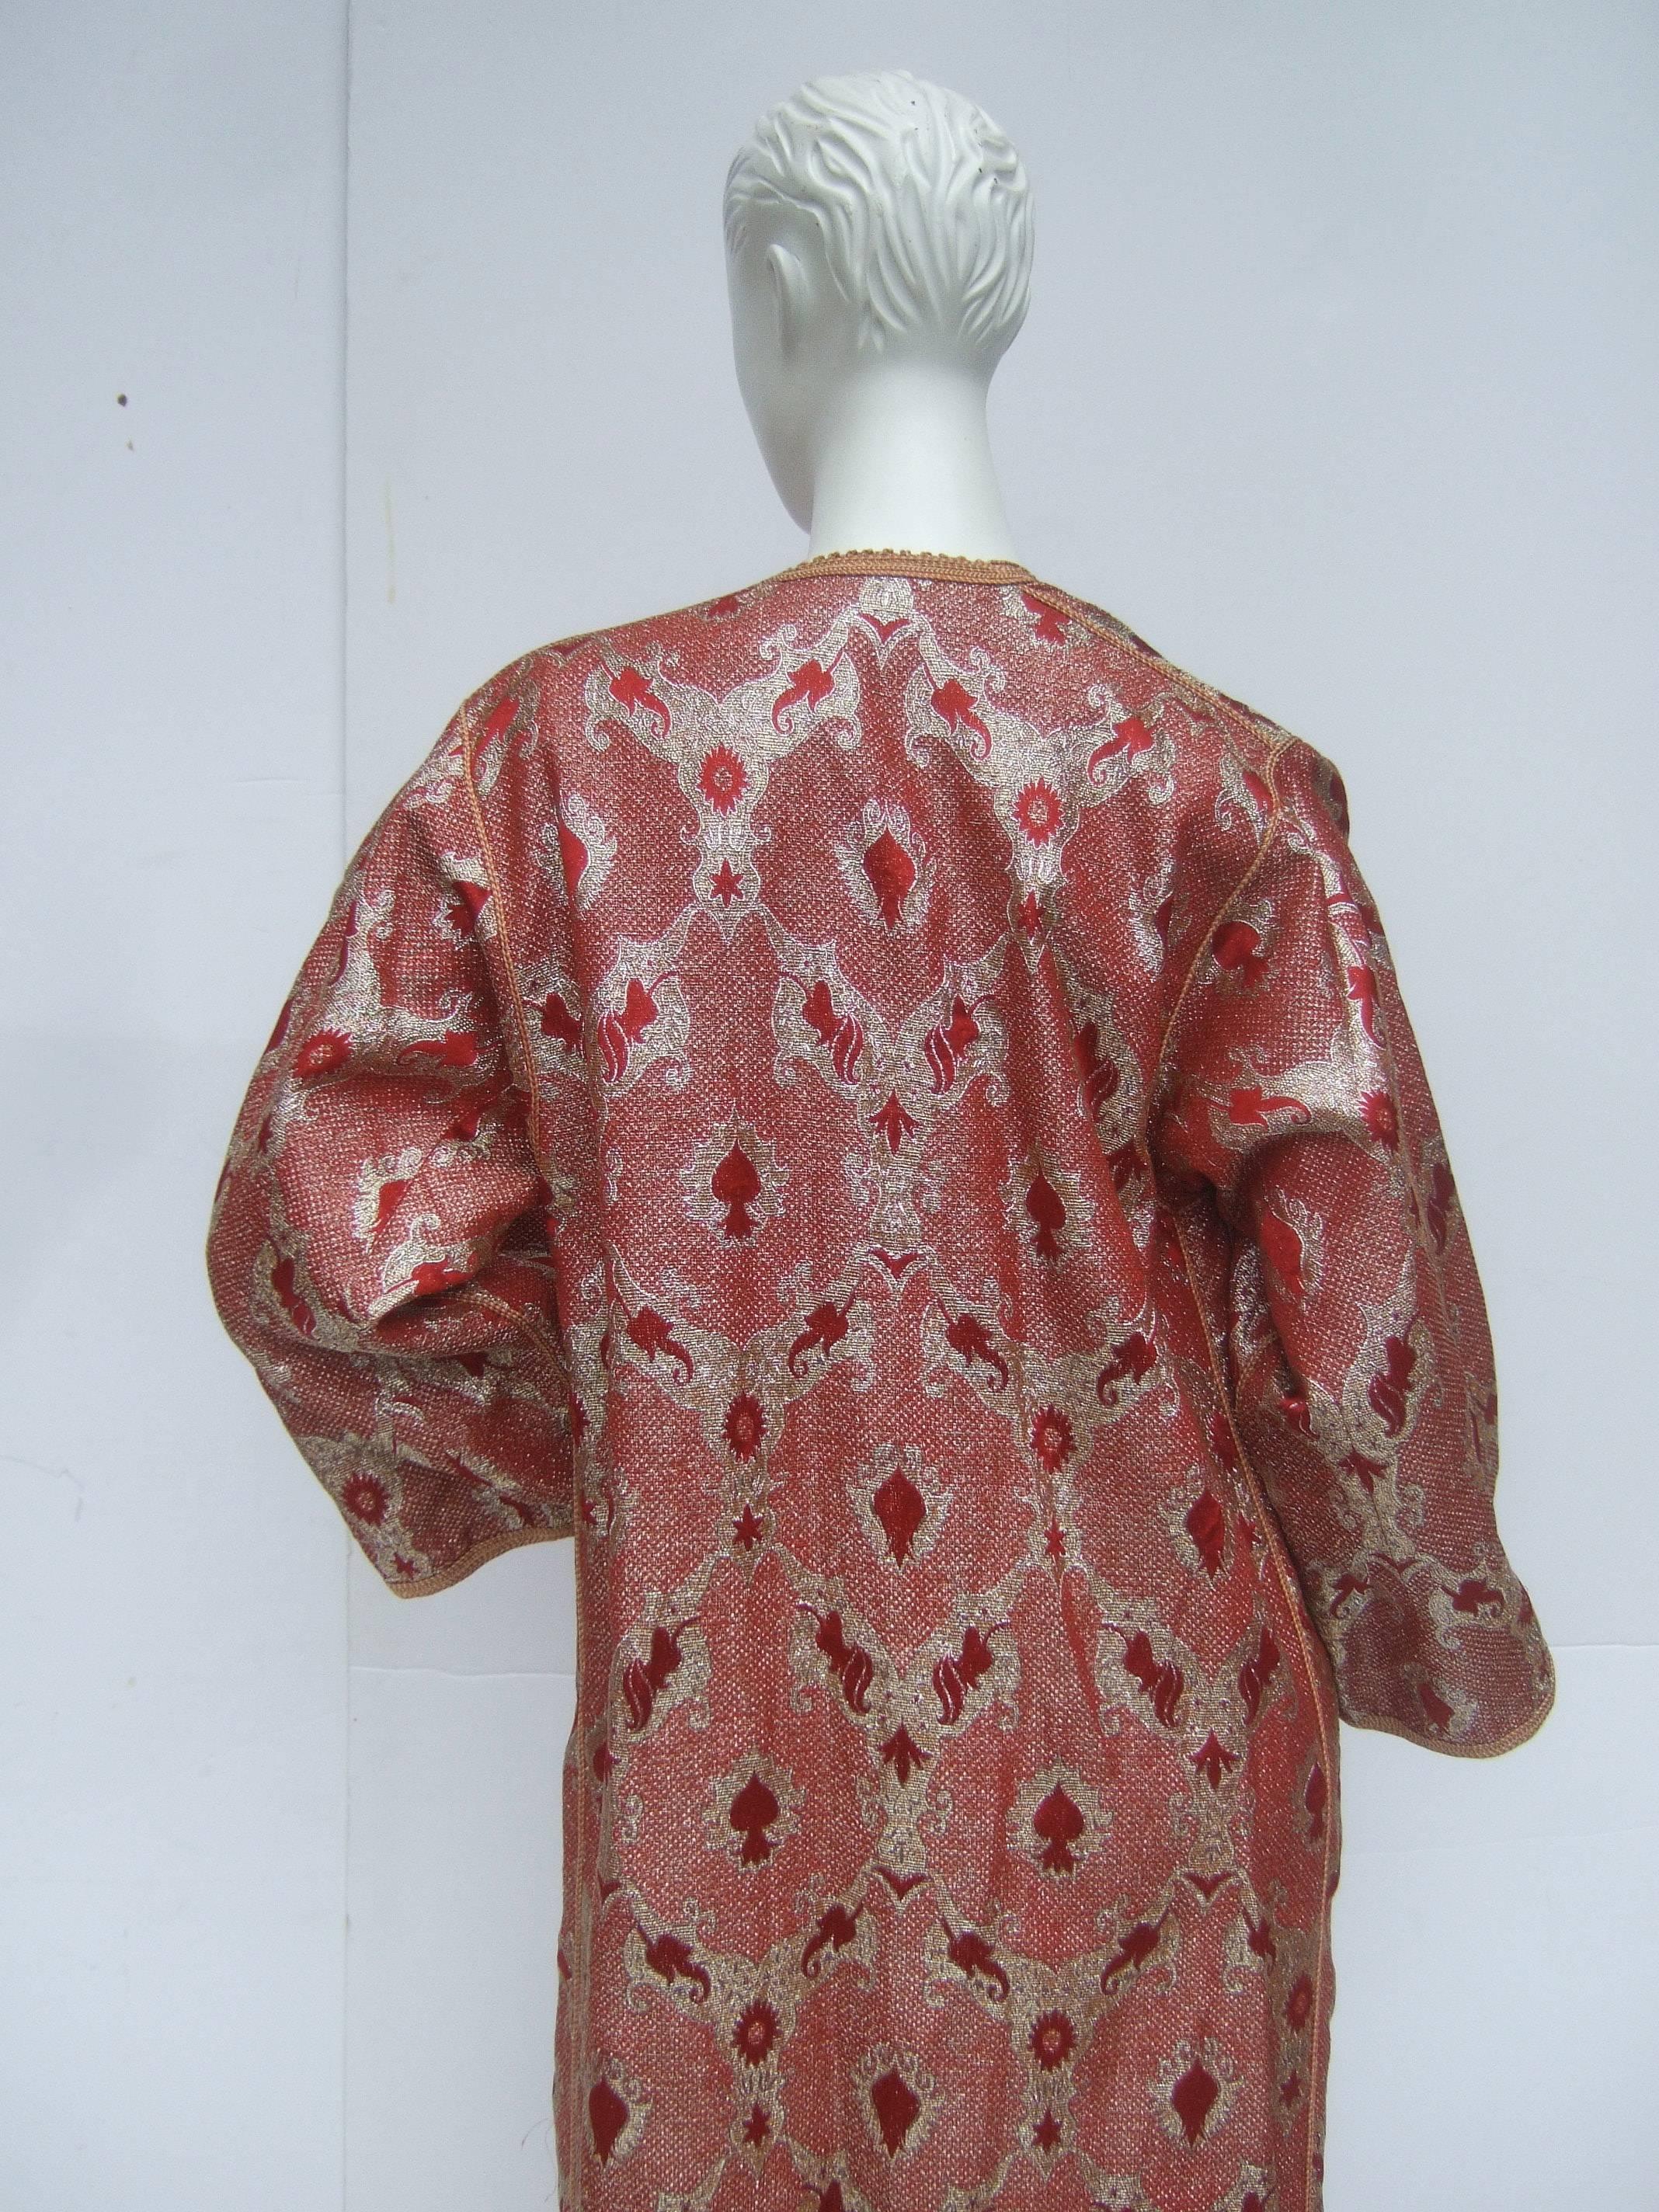 Exotic Metalllic Brocade Caftan Gown c 1970s 2